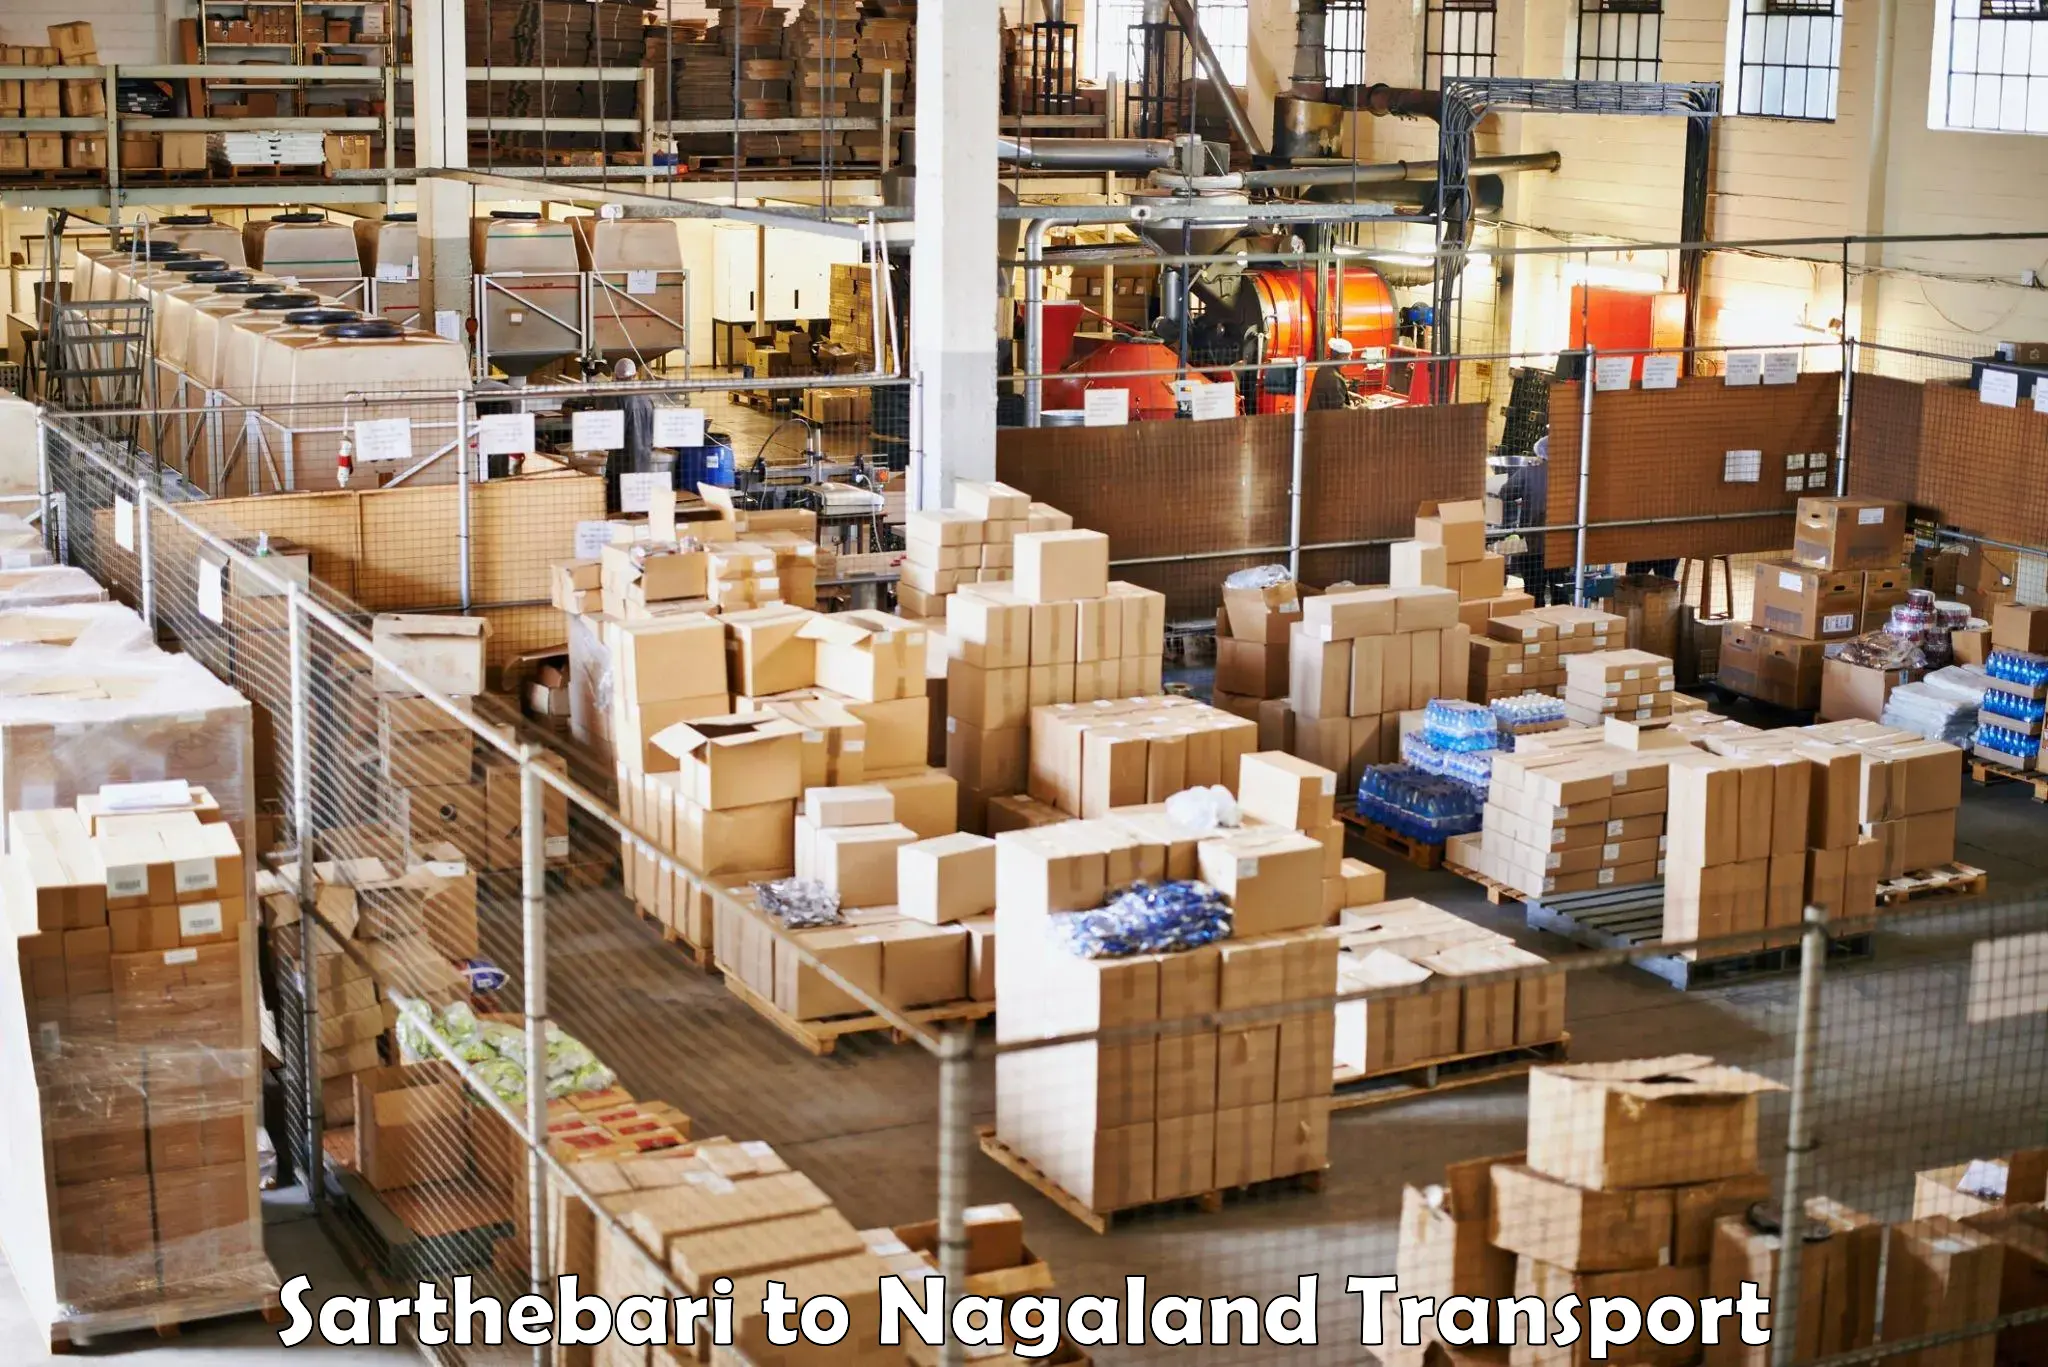 Furniture transport service Sarthebari to Nagaland